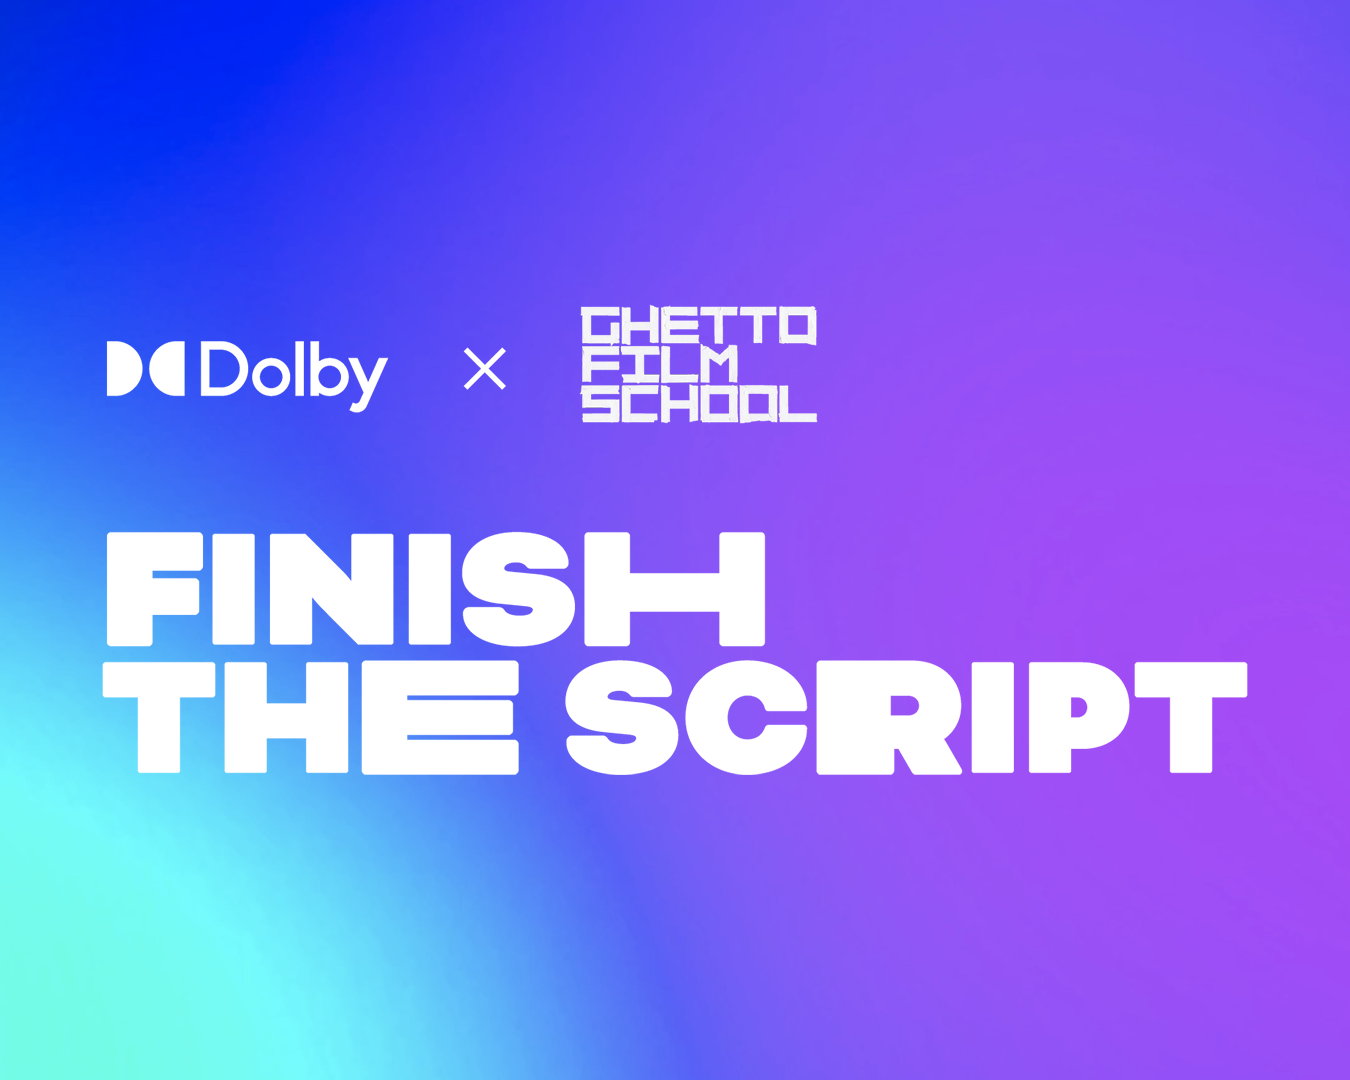 Dolby x Ghetto Film School Finish the Script 2021